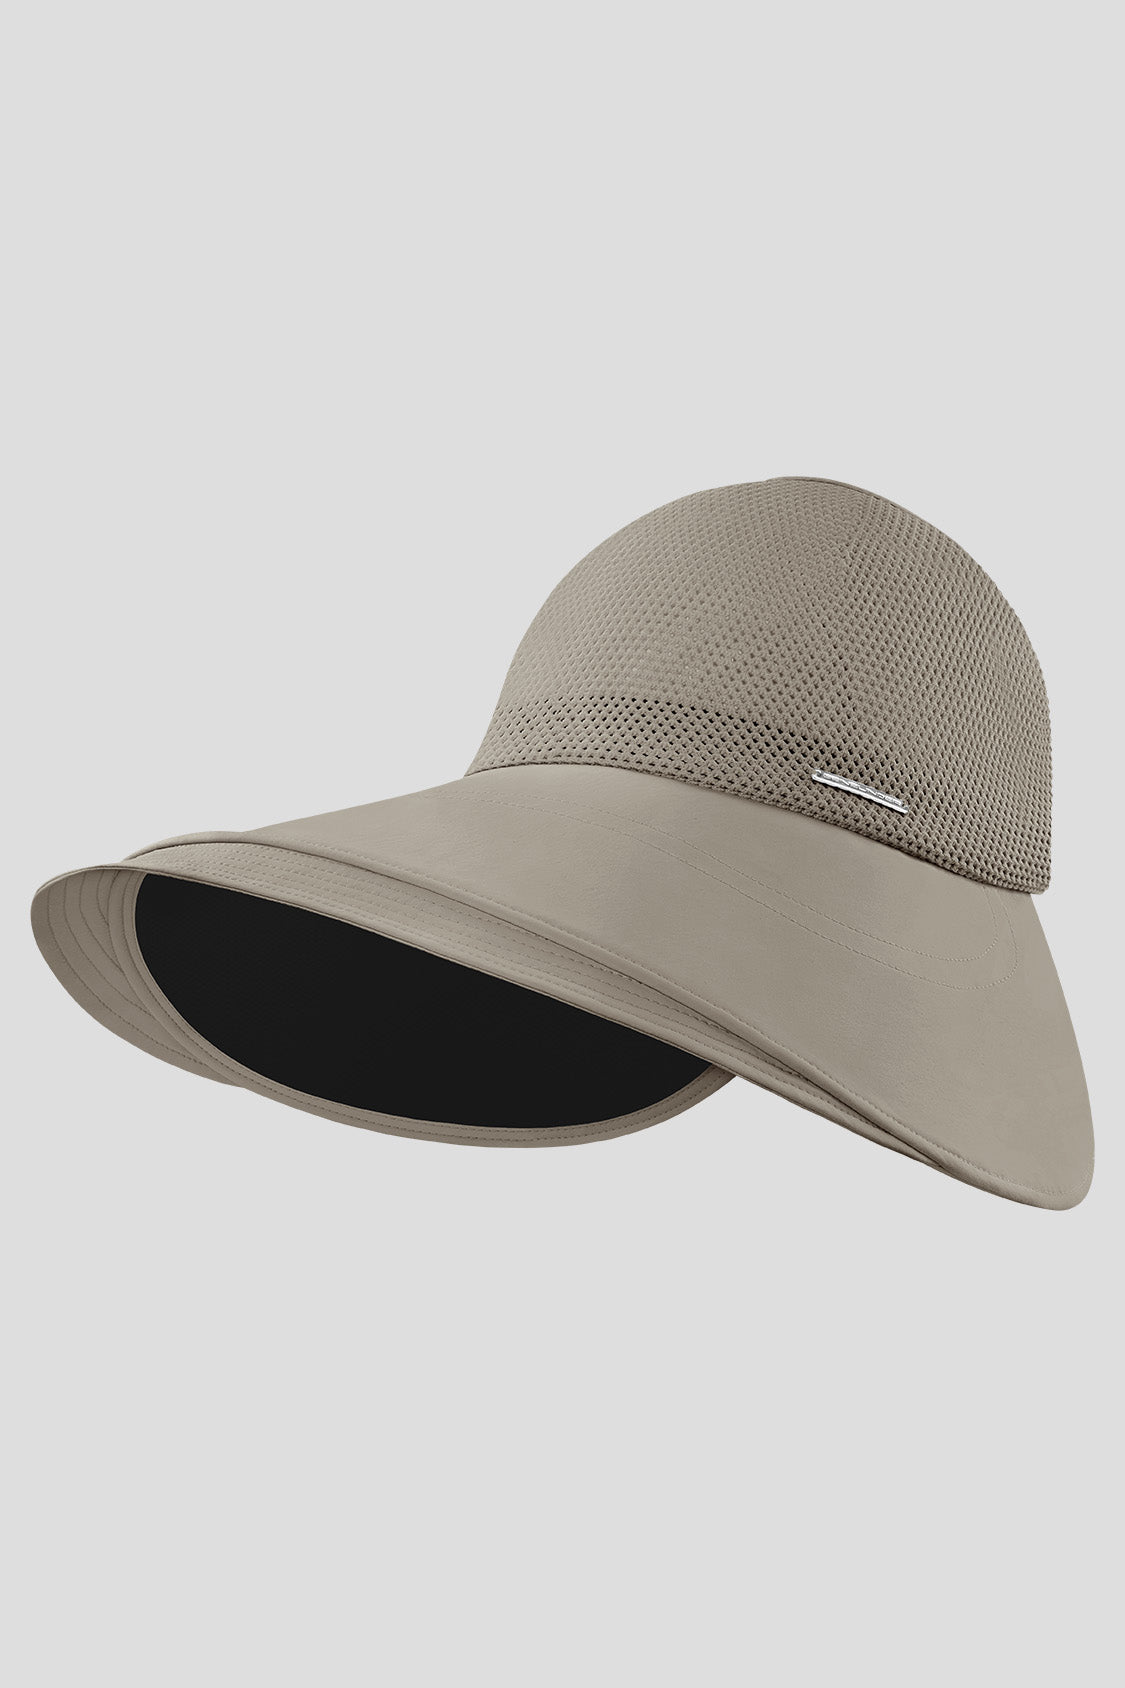 Onni - Women's Wide Brim Bucket Hats UPF50+ Sandstone Brown / 55-58